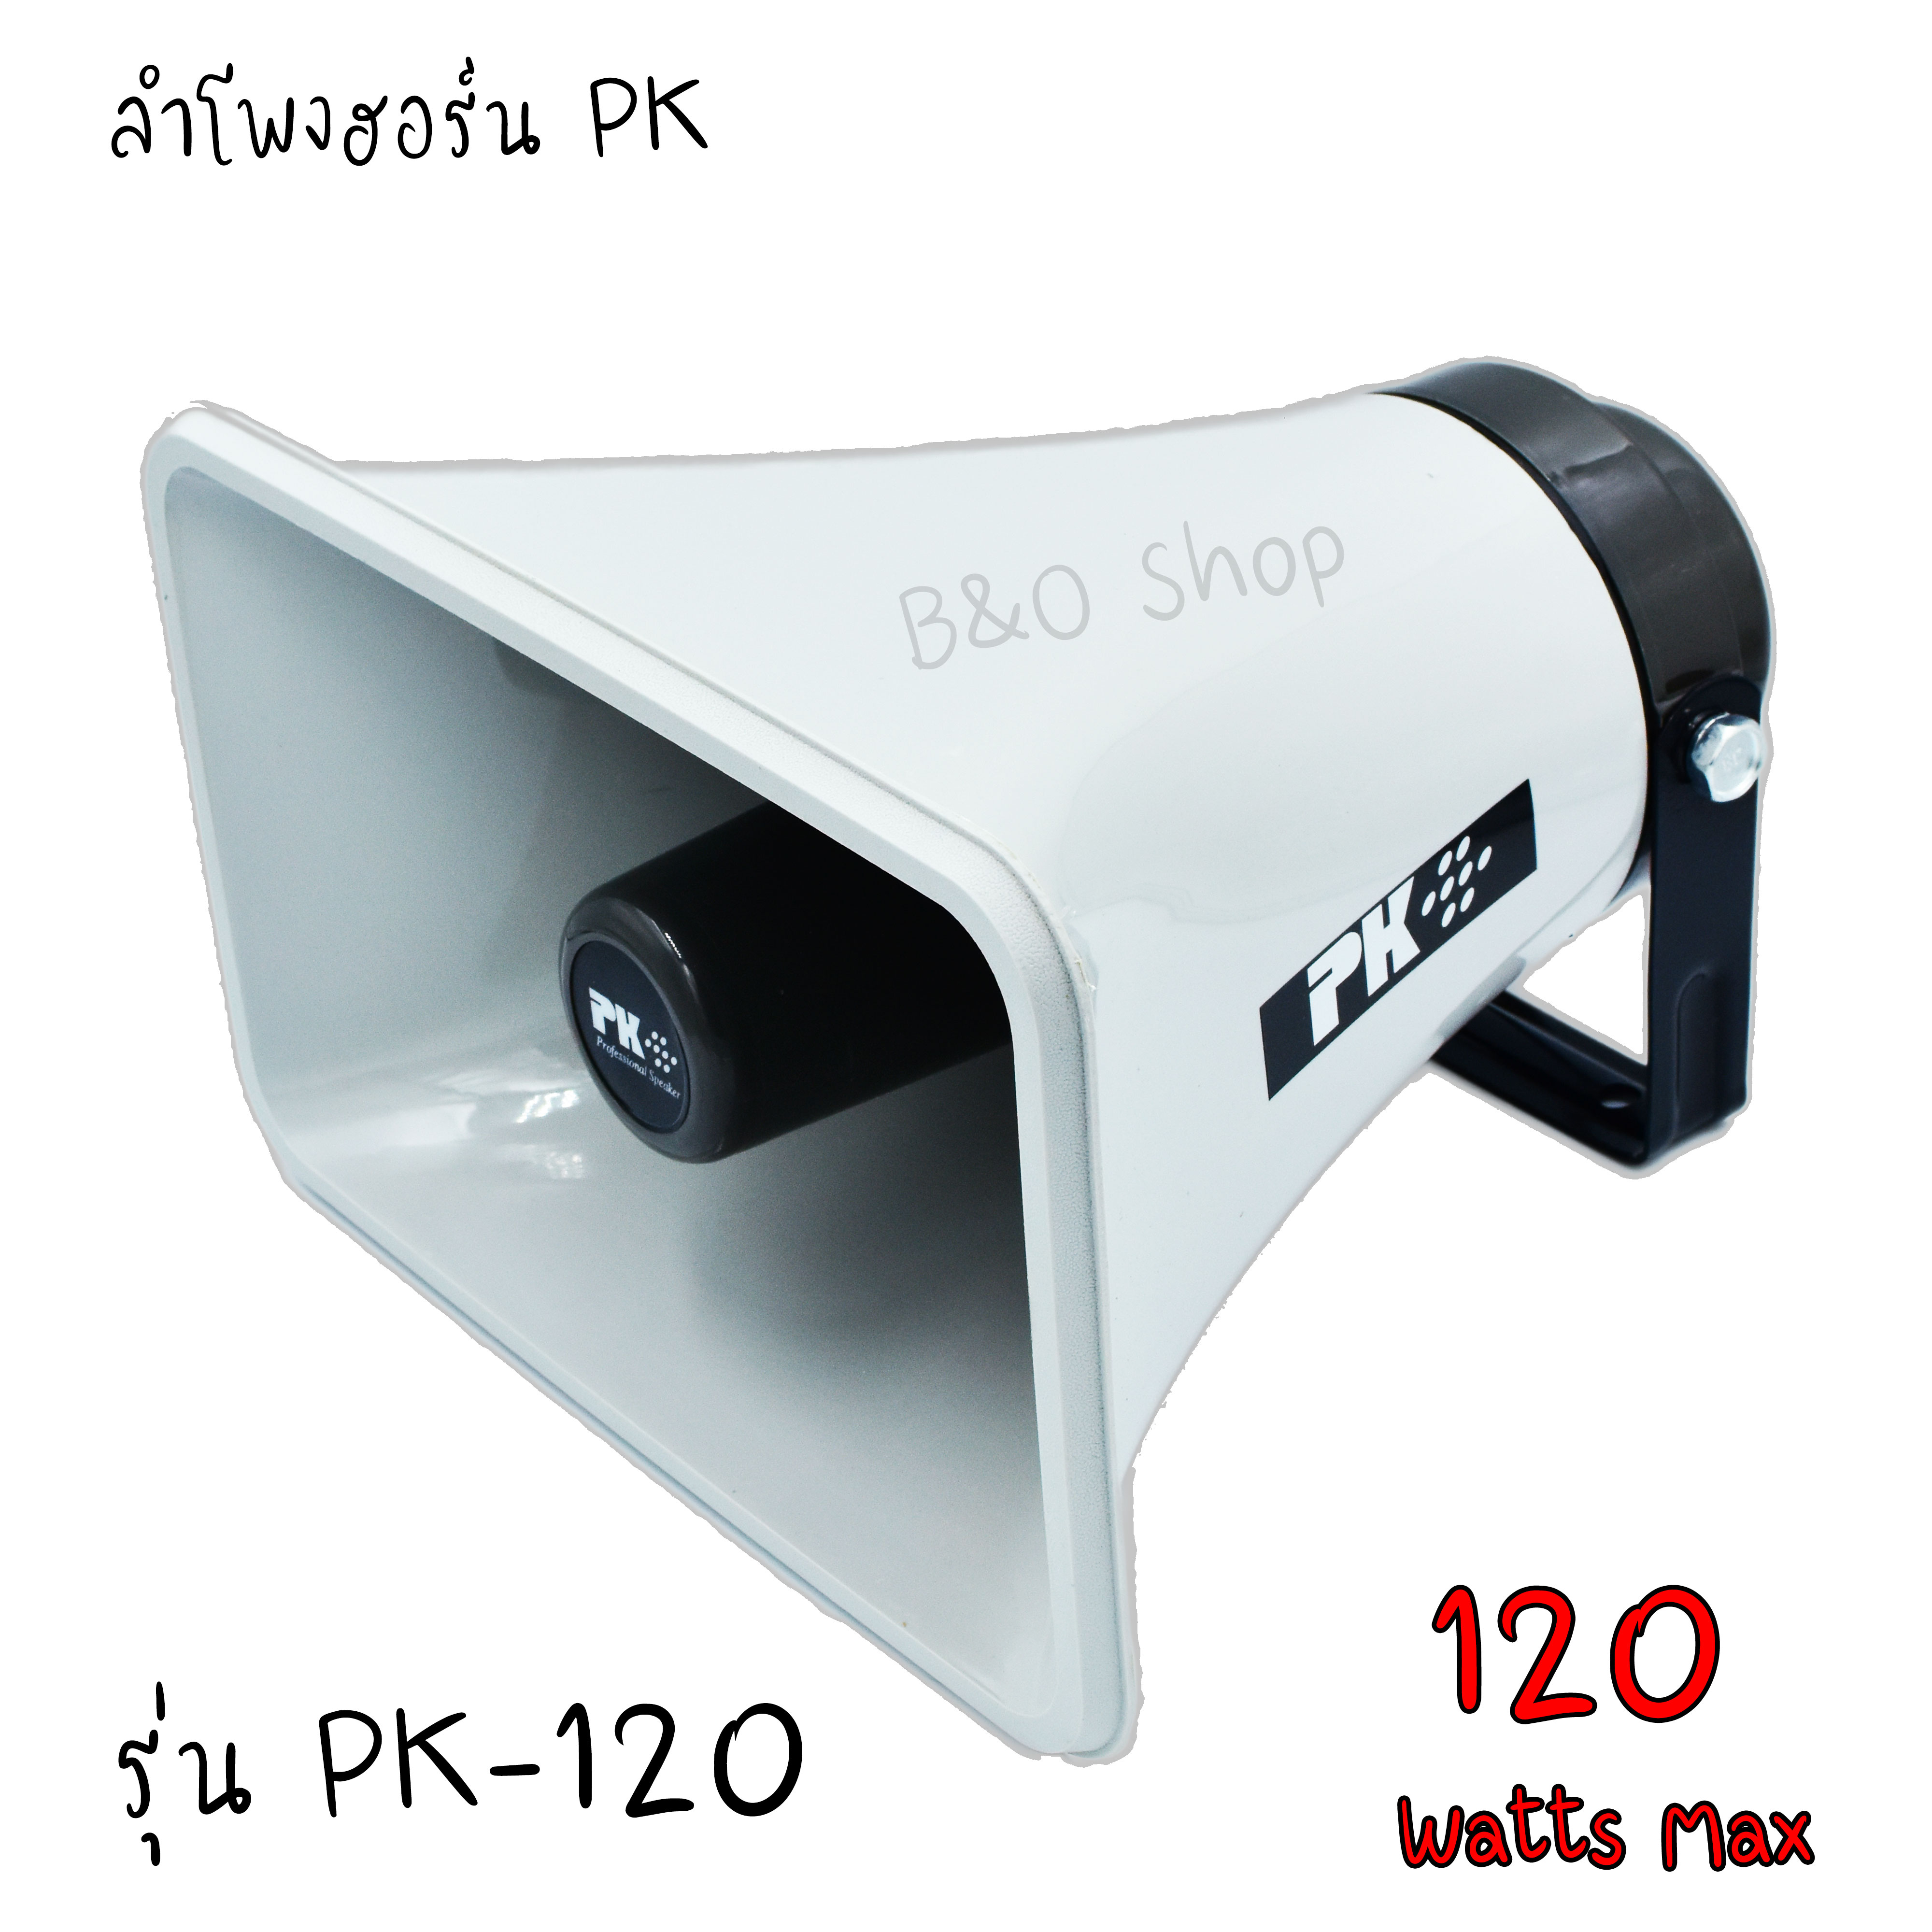 ลำโพงฮอร์น PK รุ่น PK-120 หน้ากว้าง 30x19 cm ดังเเรง พุ่งไกล  120วัตต์ จำนวน 1ตัว ของพร้อมส่ง ลำโพง ฮอร์นบ้าน เครื่องเสียงบ้าน